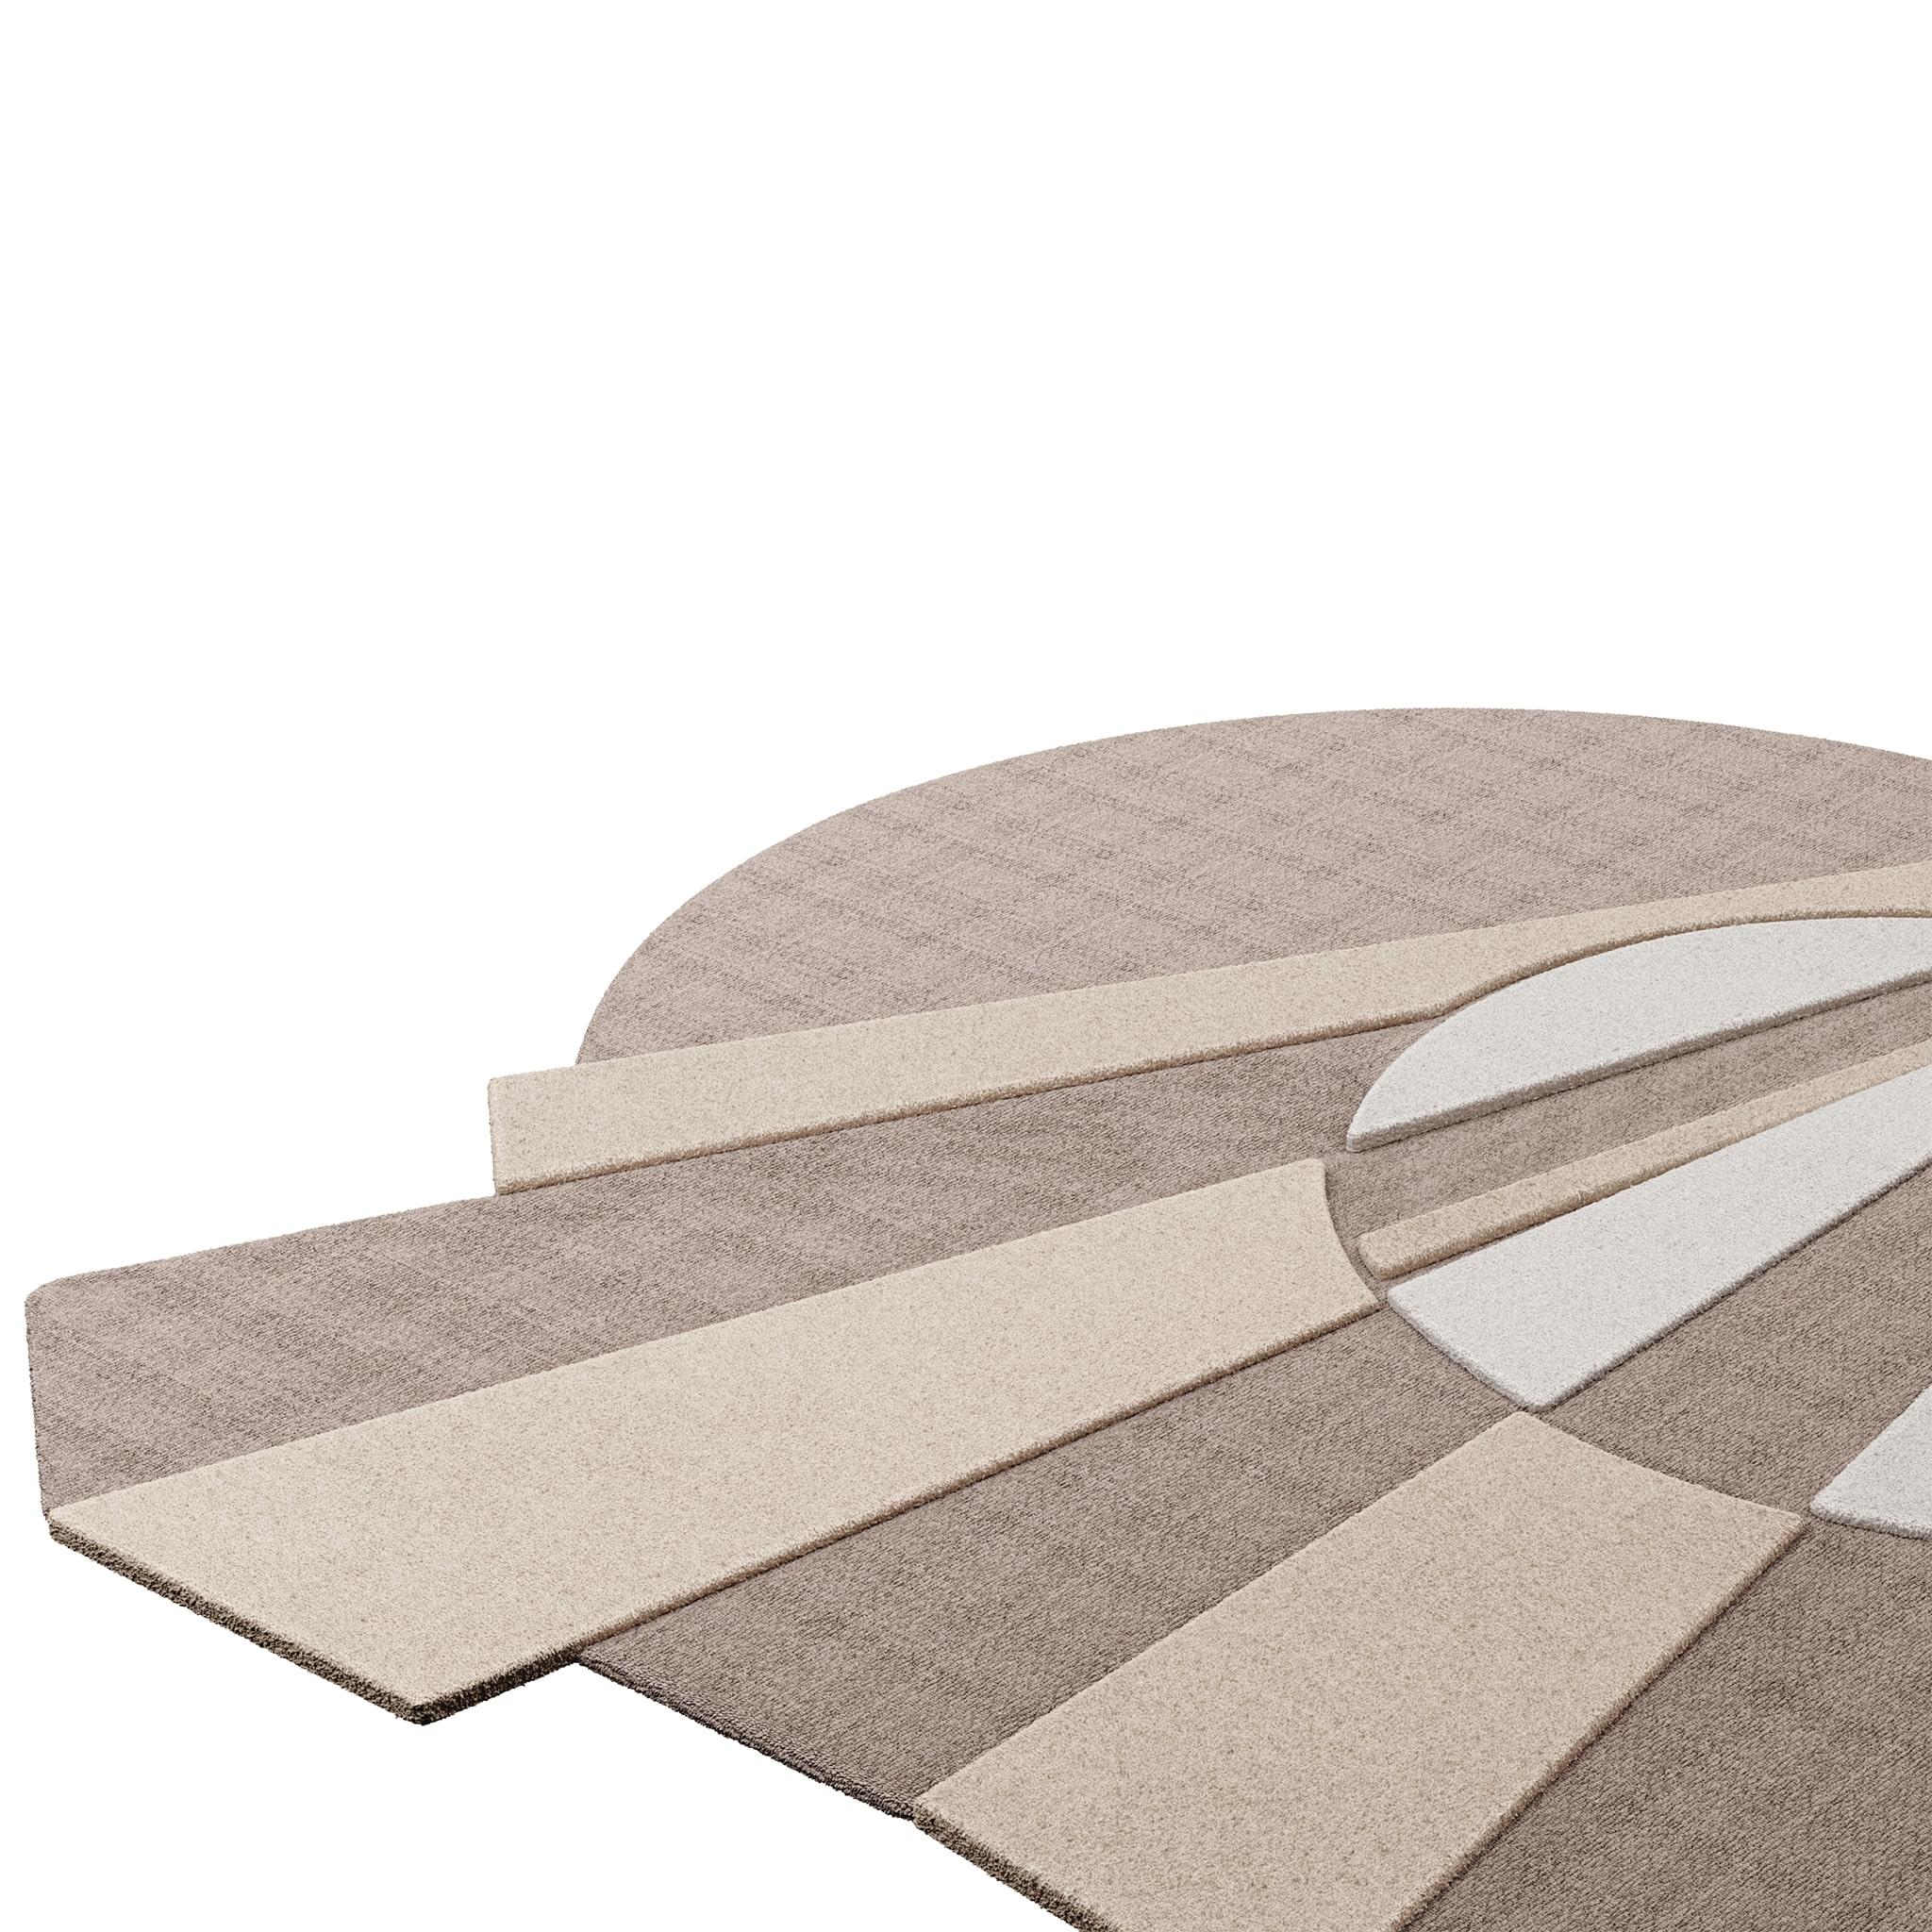 Tapis Pastel #05 ist ein pastellfarbener Teppich, der das Flair der Jahrhundertmitte mit dem Stil von Memphis Design verbindet. Die Kombination aus Pastellrosa und Sandtönen verleiht jedem Raum Eleganz und Romantik.
Dieser pastellfarbene Teppich